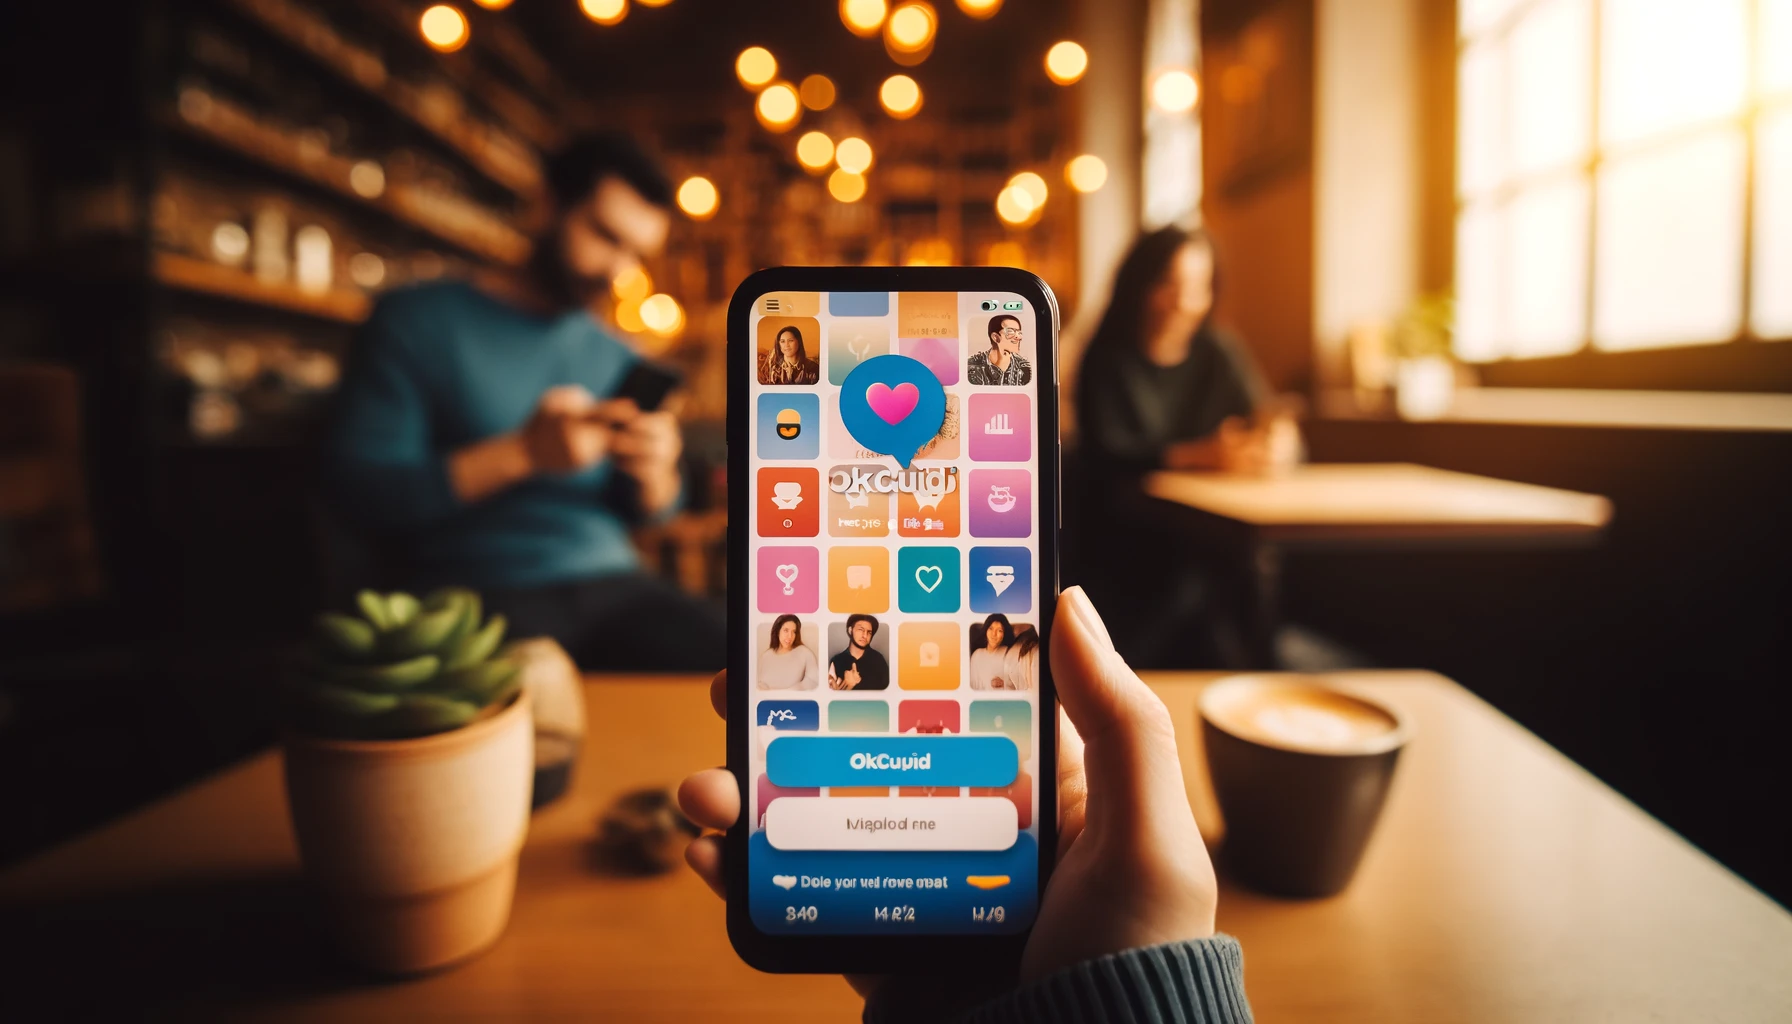 תמונה של צילום מקרוב של סמארטפון המציג את ממשק אפליקציית OKCupid בסביבה נעימה של בית קפה. ניתן לראות את פרופילי המשתמשים הצבעוניים ובבועות הצ'אט, כשברקע זוג שמוסיף לאווירה הנינוחה והמזמינה של הסצנה.